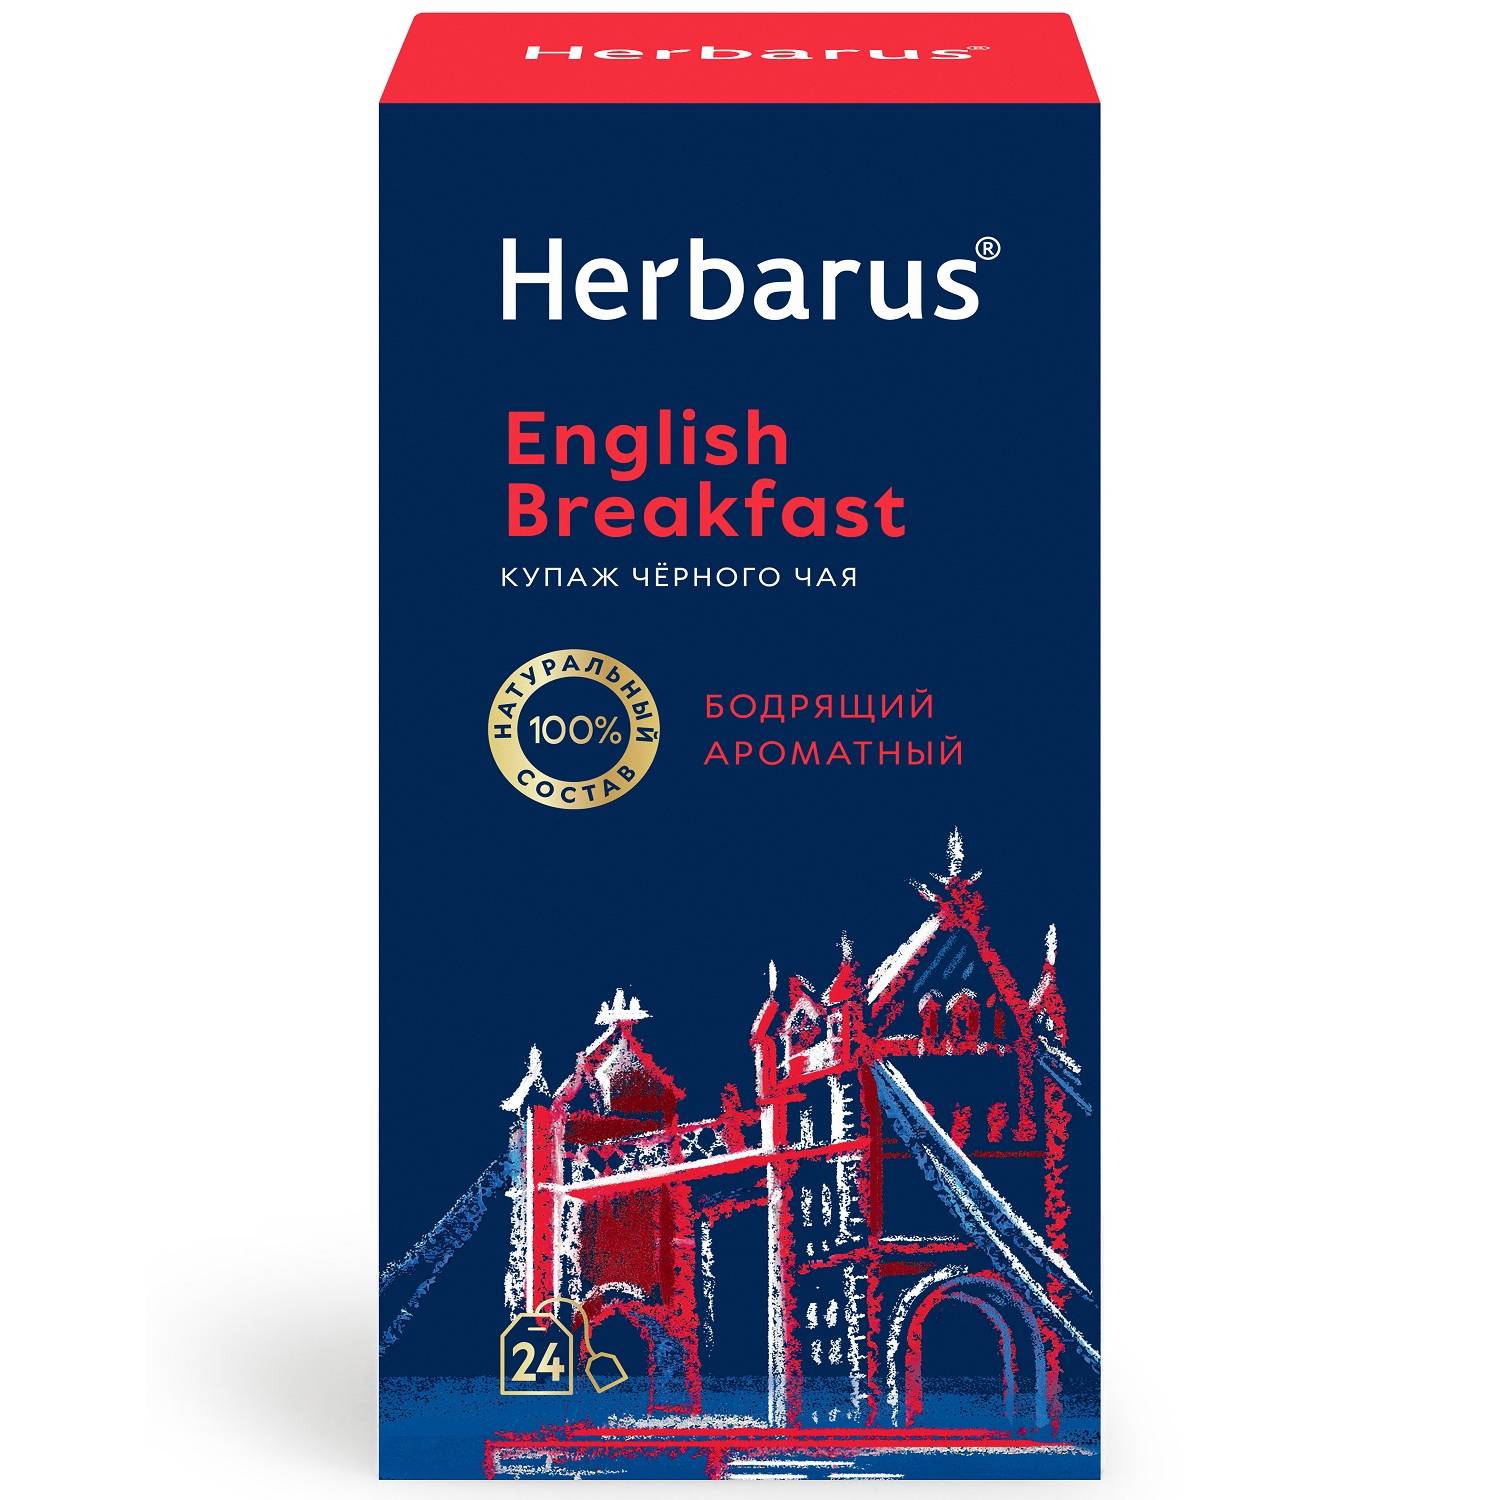 Herbarus Купаж черного чая English Breakfast, 24 пакетика х 2 г (Herbarus, Классический чай) herbarus чай черный с добавками дикий терпкий 24 х 2 г herbarus чай с добавками